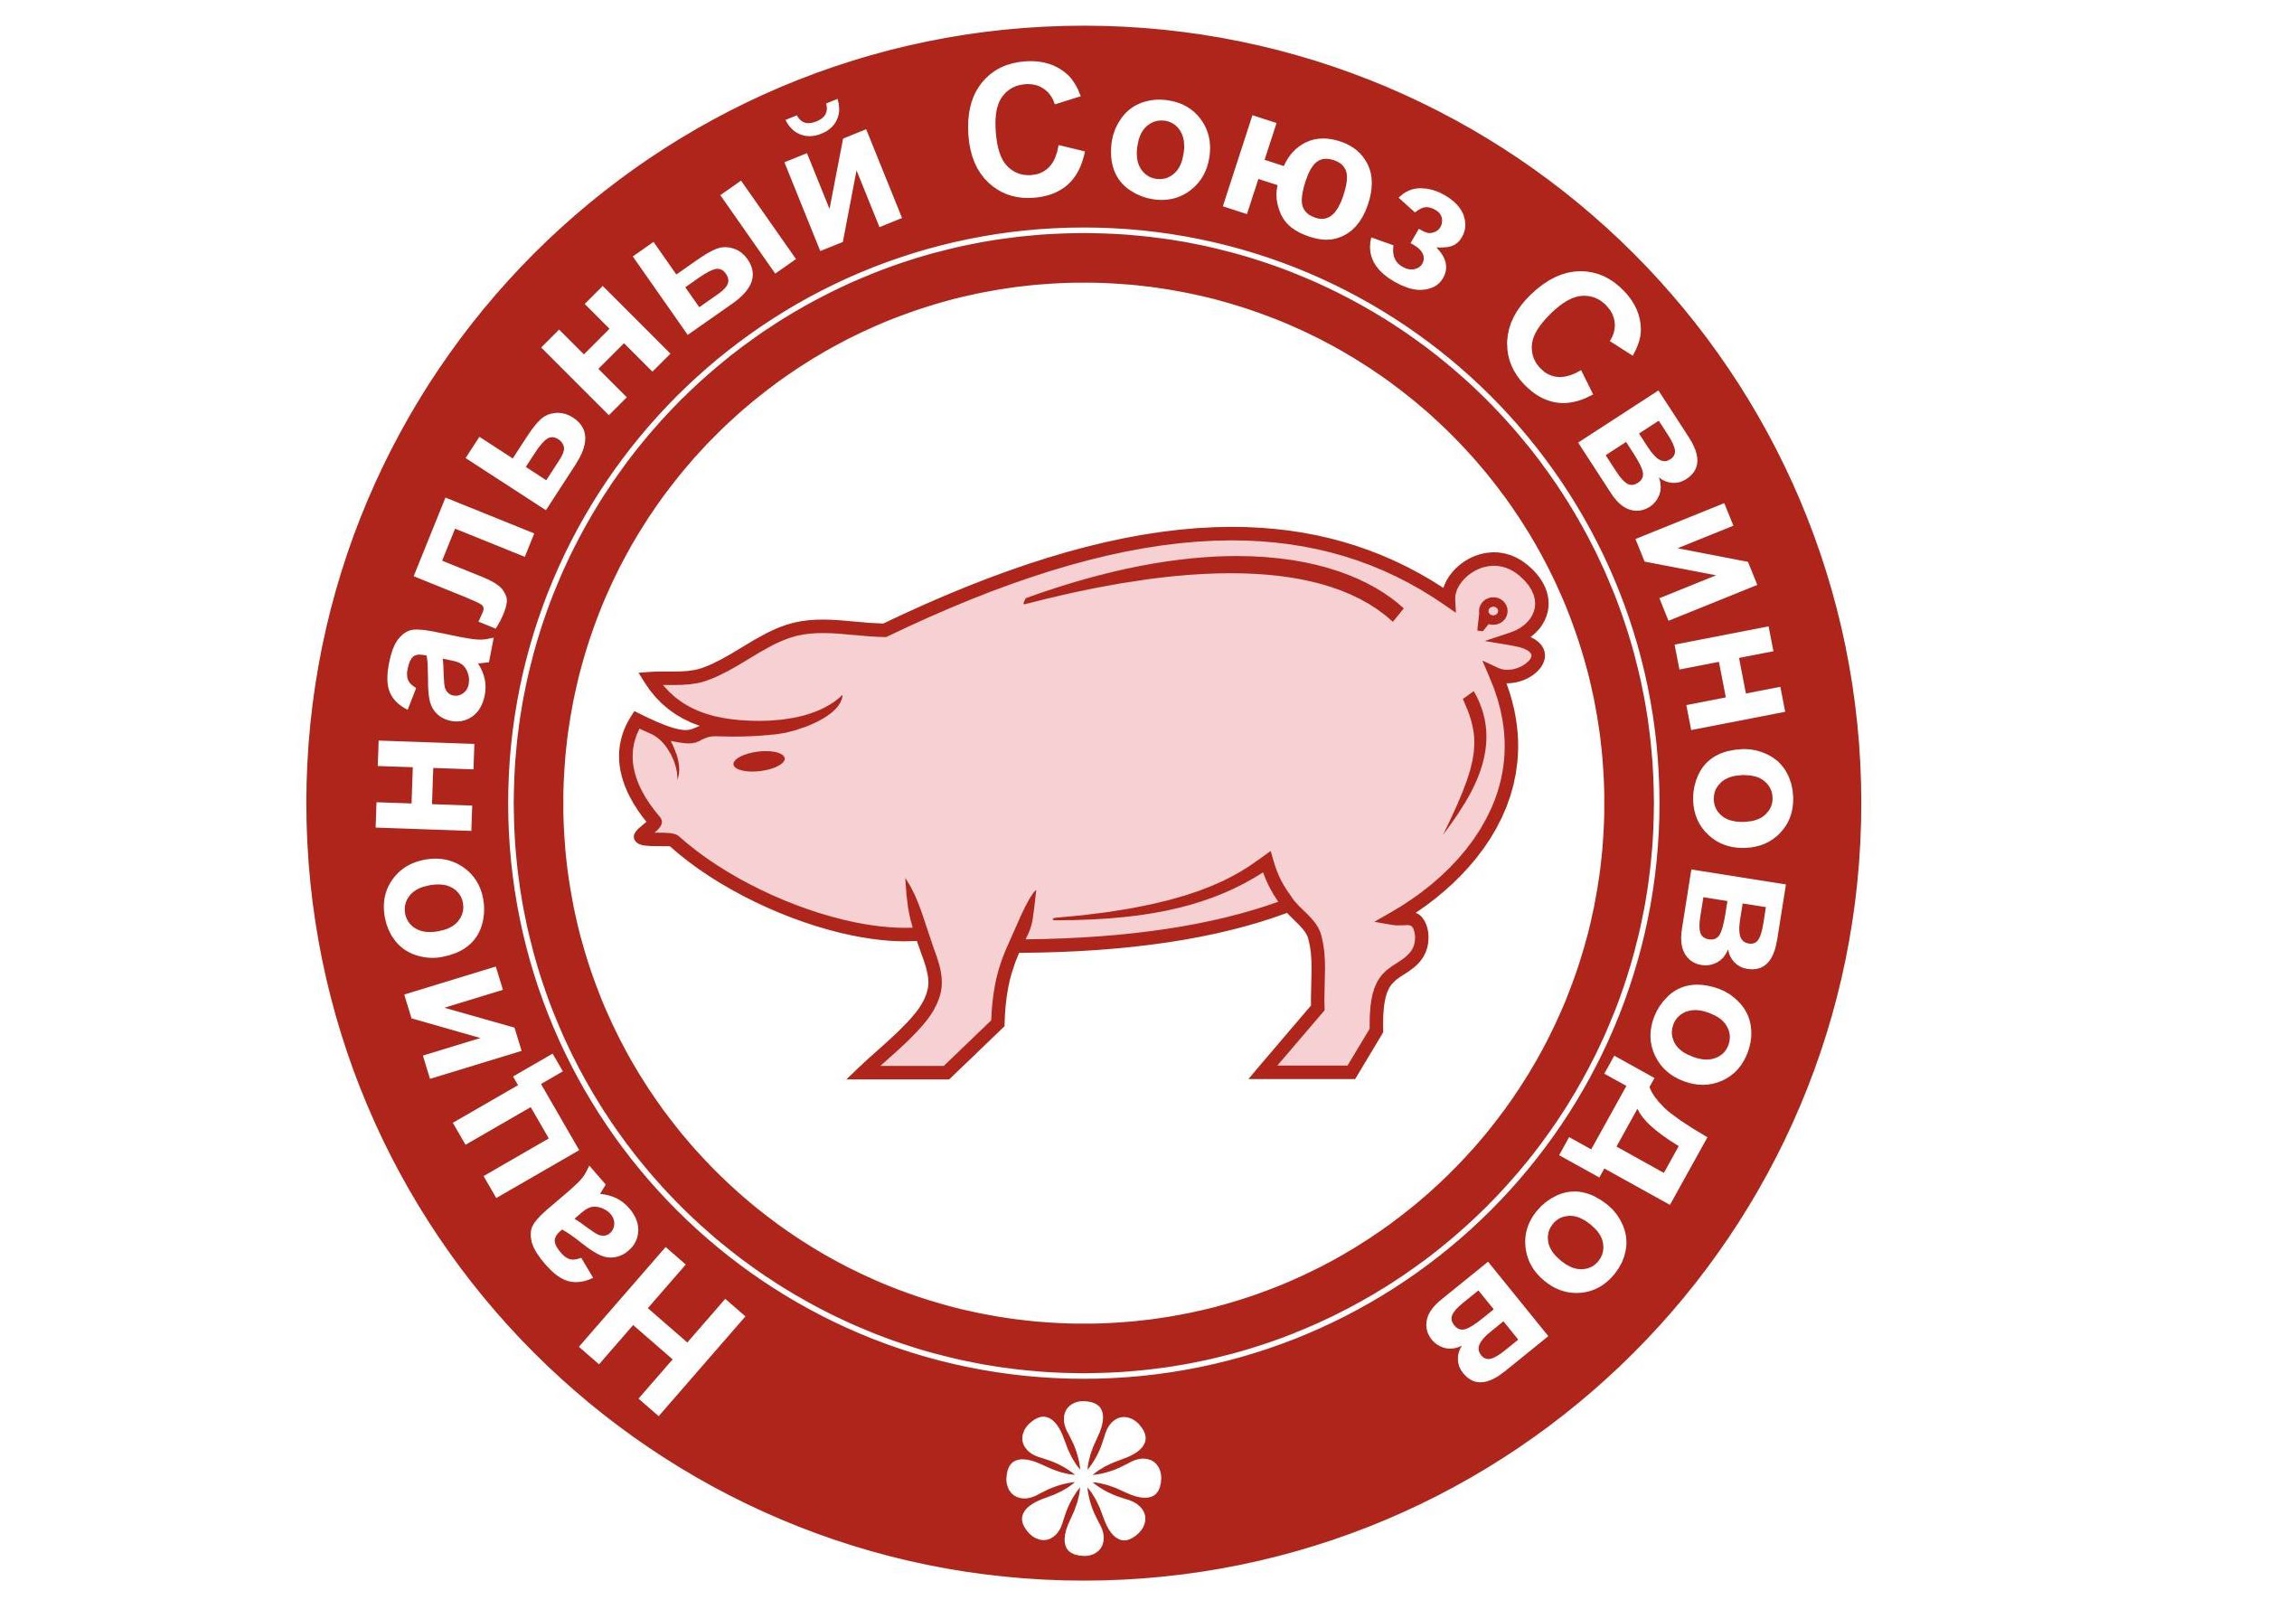 Национальный союз организаций. Национальный Союз свиноводов 2022. Лого национальный Союз свиноводов. Рейтинг национального Союза свиноводов. Логотип свинокомплекса.